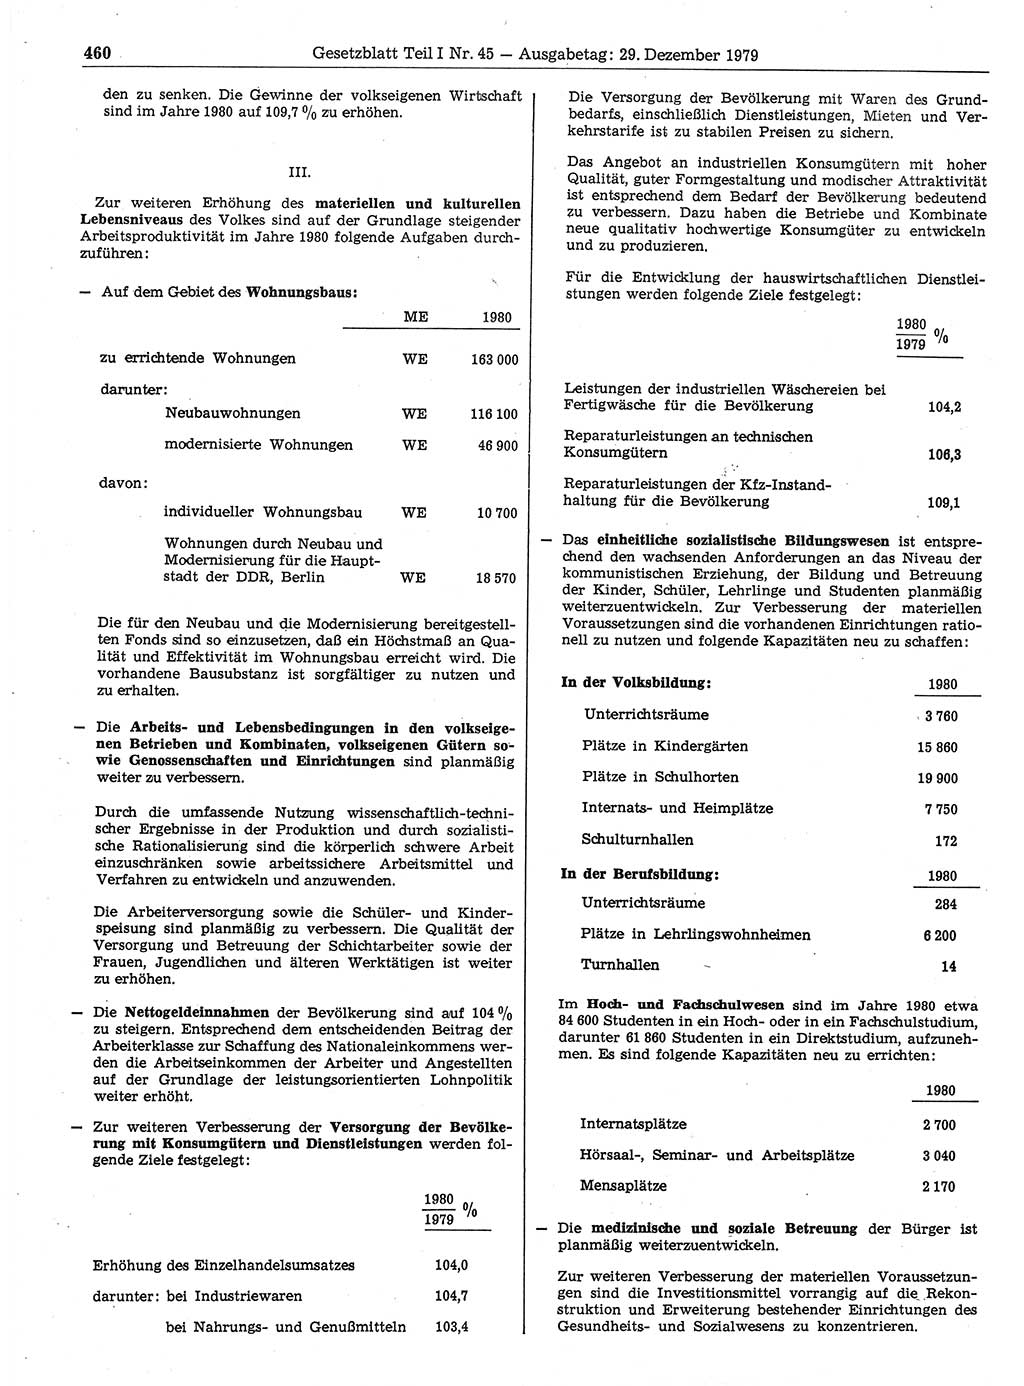 Gesetzblatt (GBl.) der Deutschen Demokratischen Republik (DDR) Teil Ⅰ 1979, Seite 460 (GBl. DDR Ⅰ 1979, S. 460)